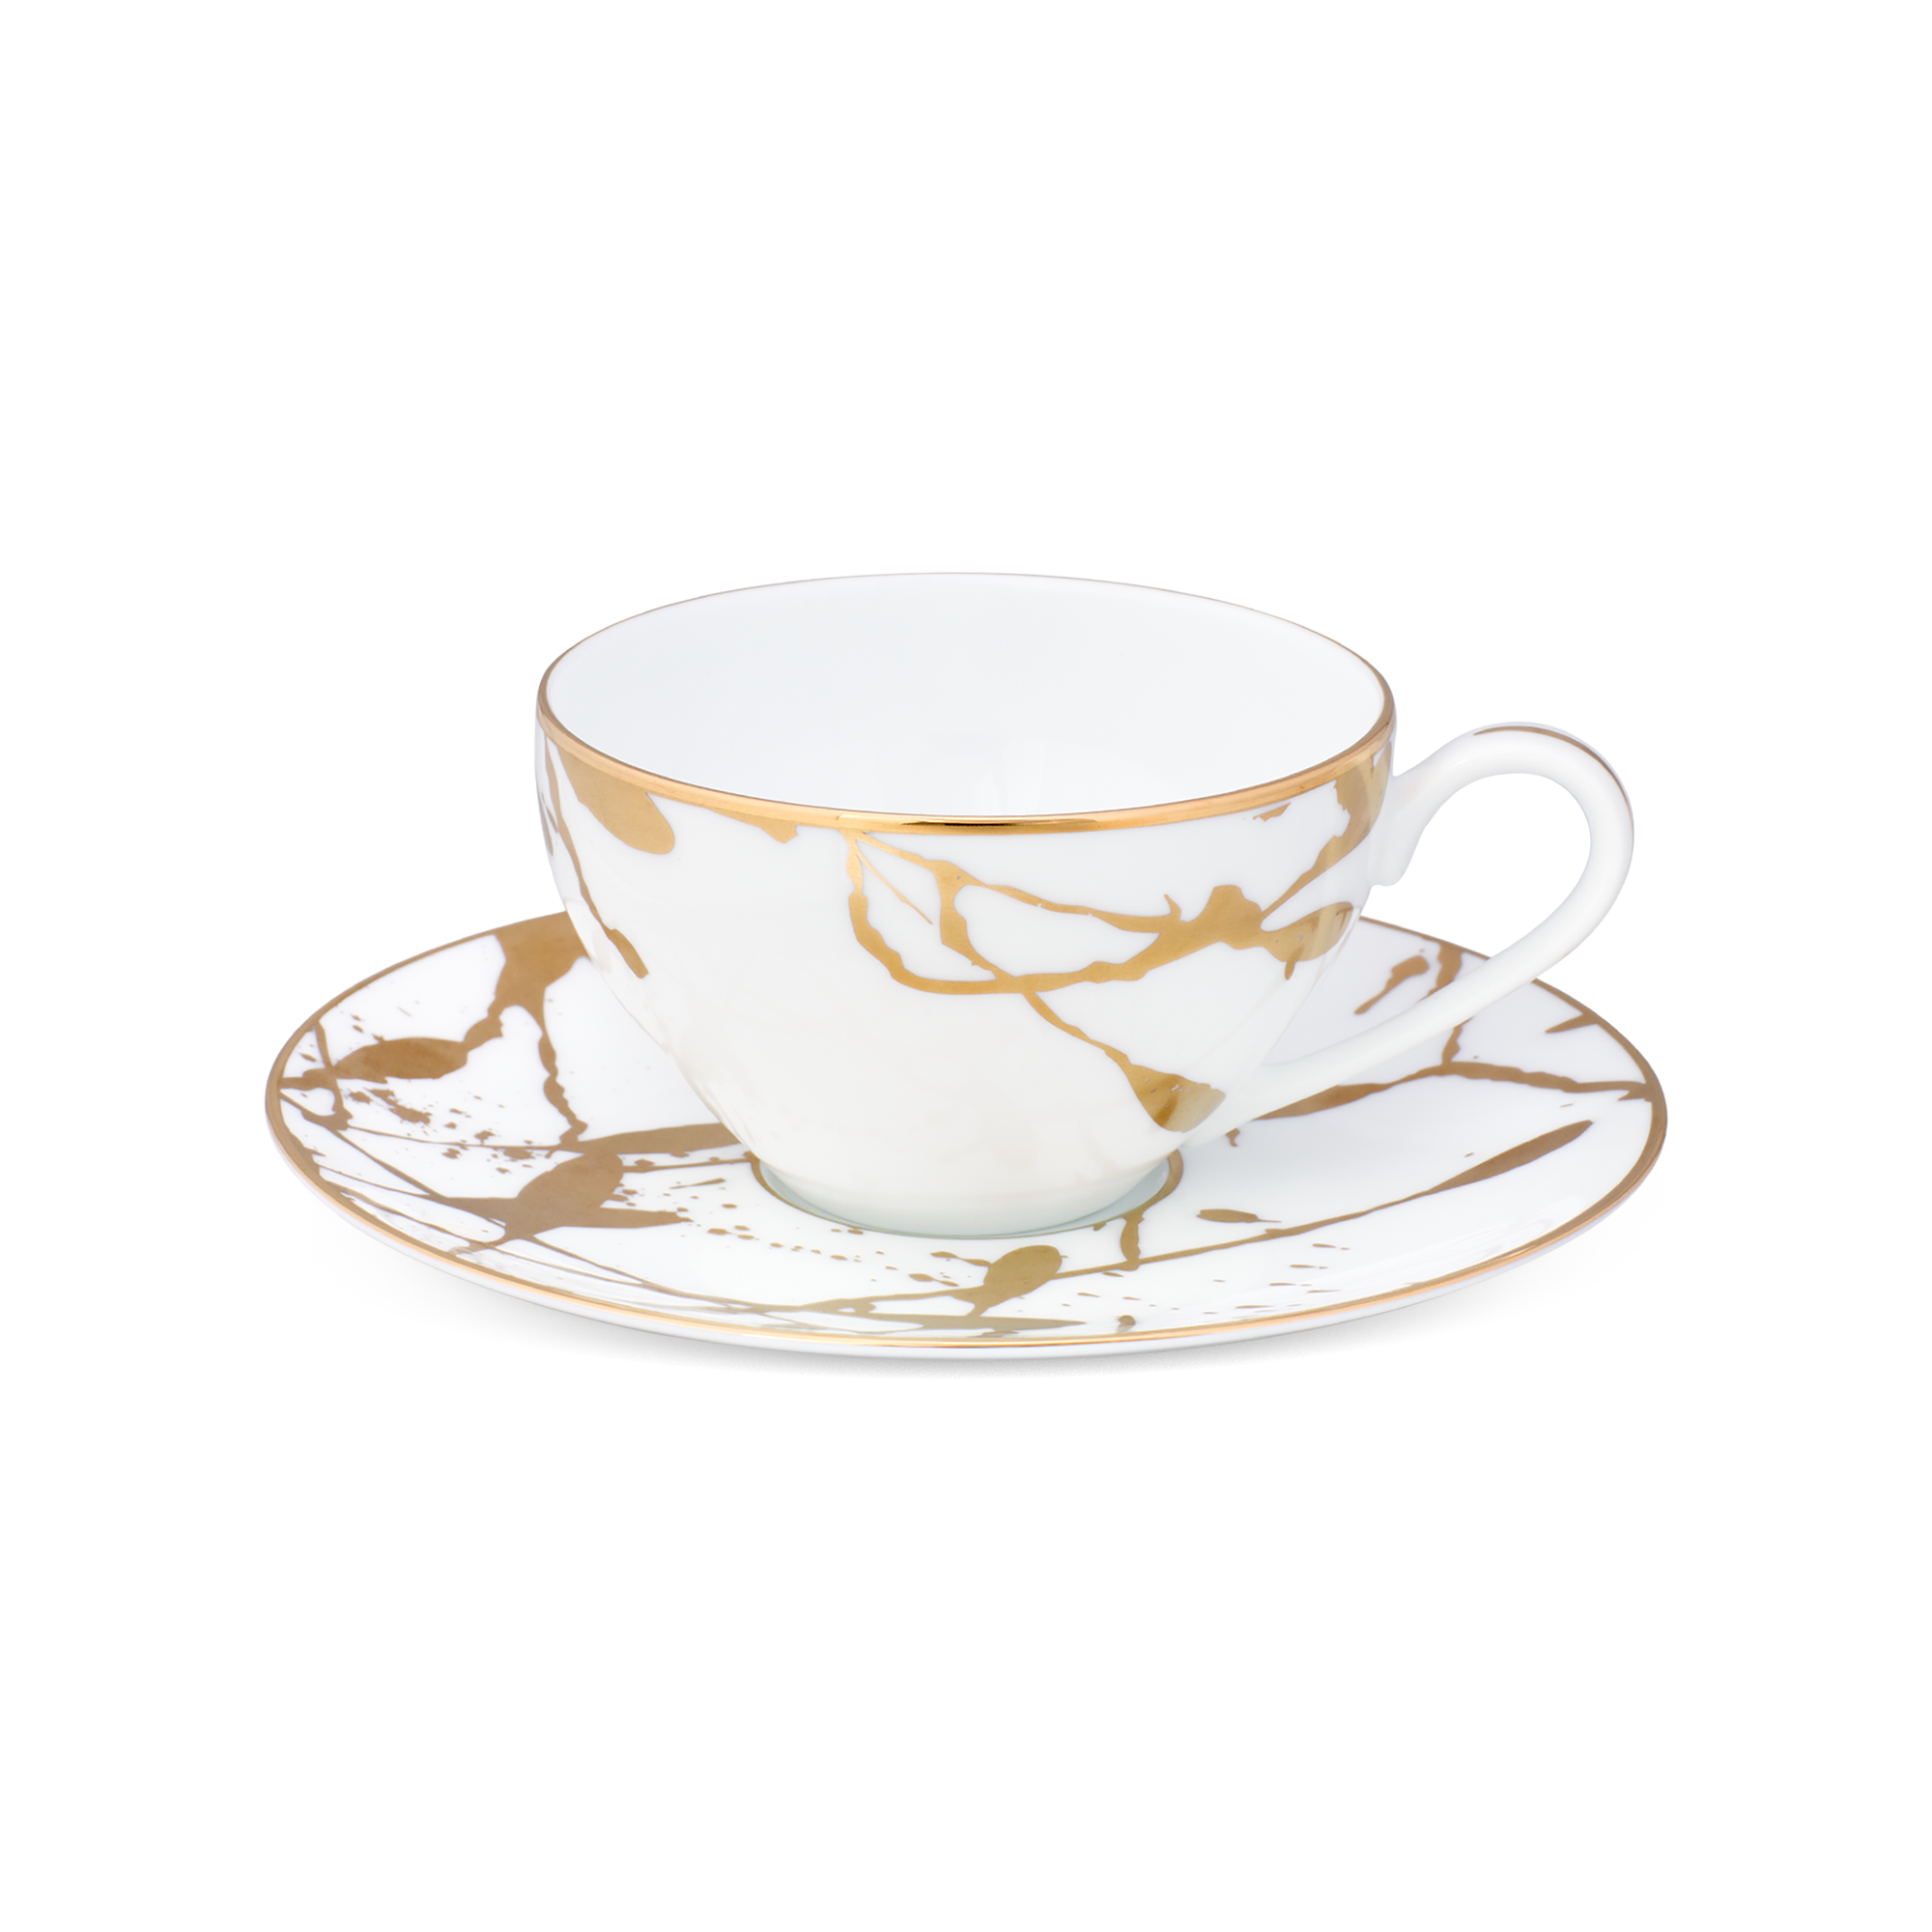  Chén trà (tách trà) kèm đĩa lót 220ml sứ trắng cao cấp | Raptures Gold 10-561L-T94989 